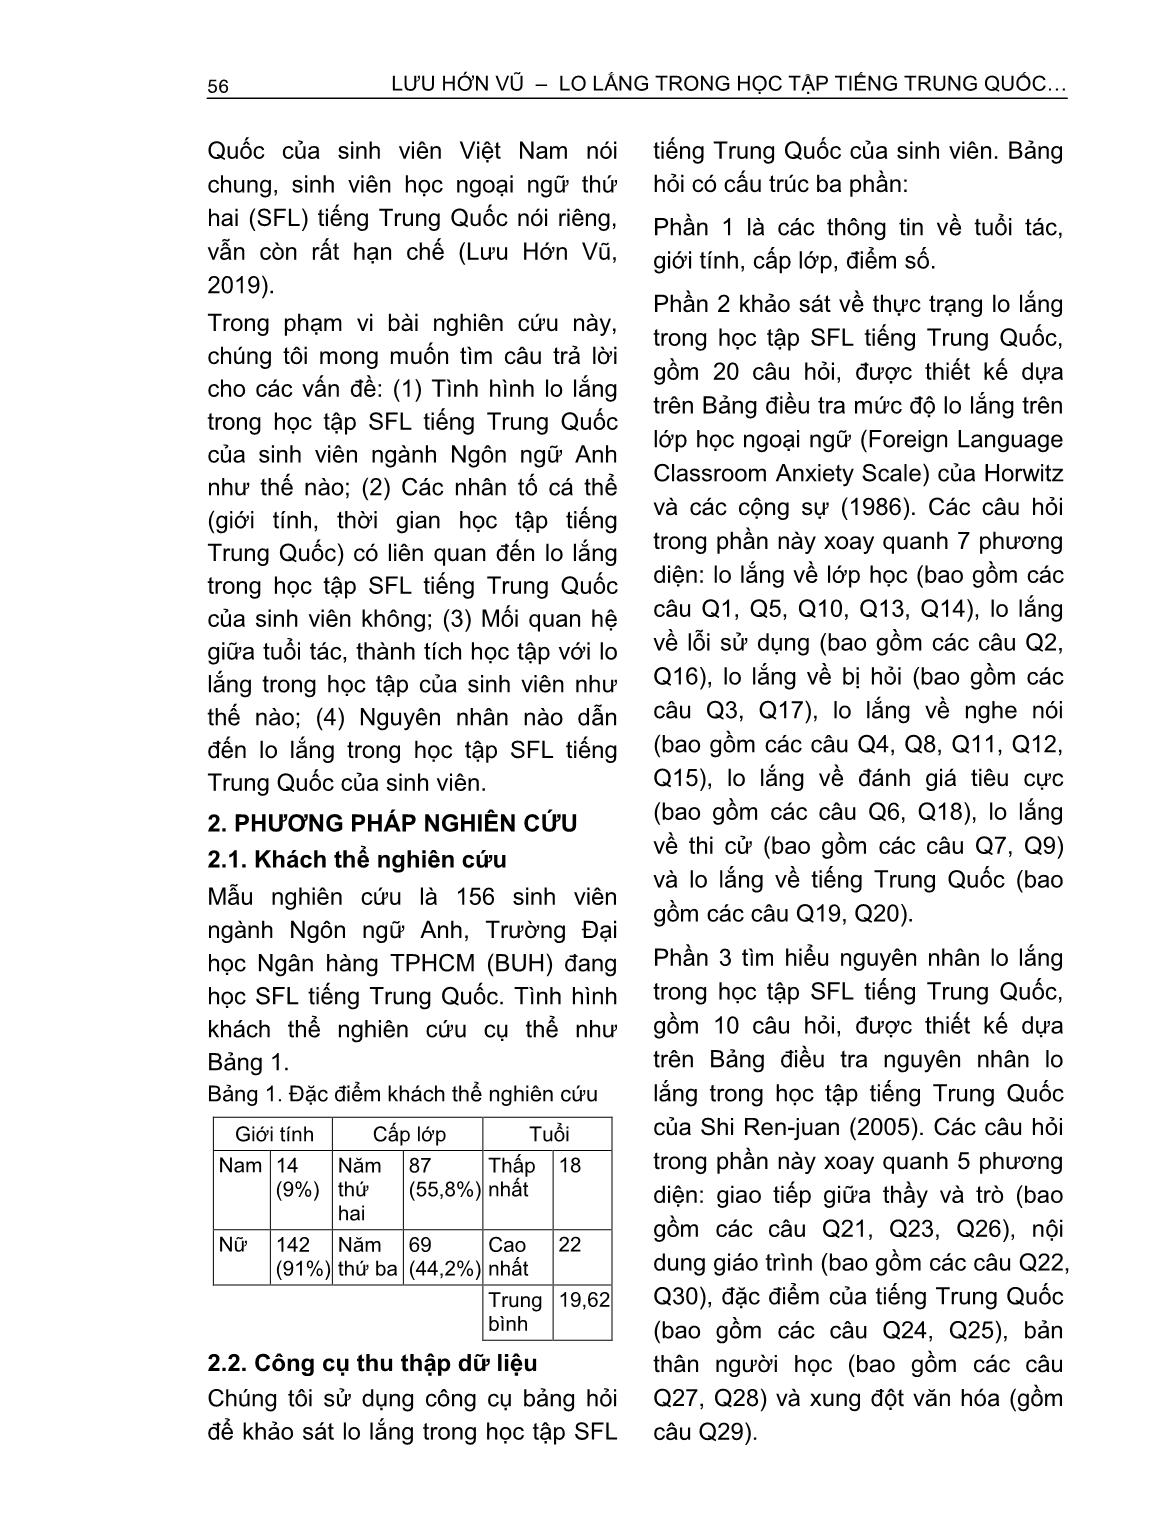 Lo lắng trong học tập tiếng Trung Quốc - Ngoại ngữ thứ hai của sinh viên ngành Ngôn ngữ anh (Trường hợp Trường Đại học Ngân hàng thành phố Hồ Chí Minh) trang 2